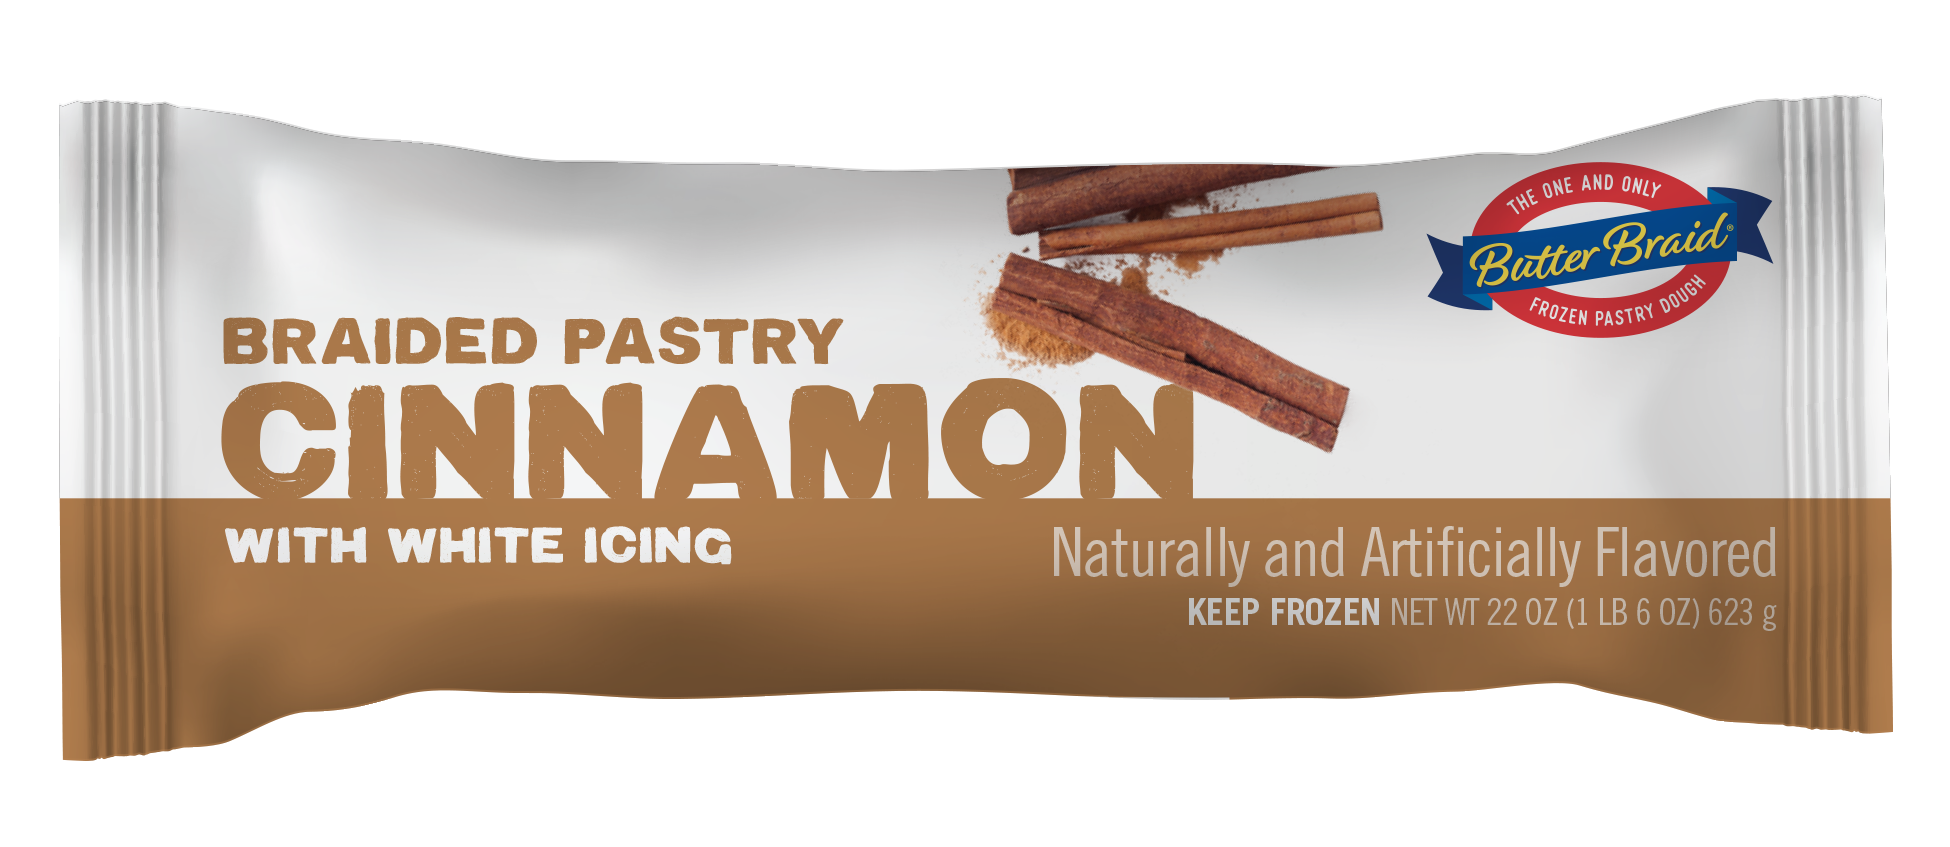 Cinnamon pastry packaging